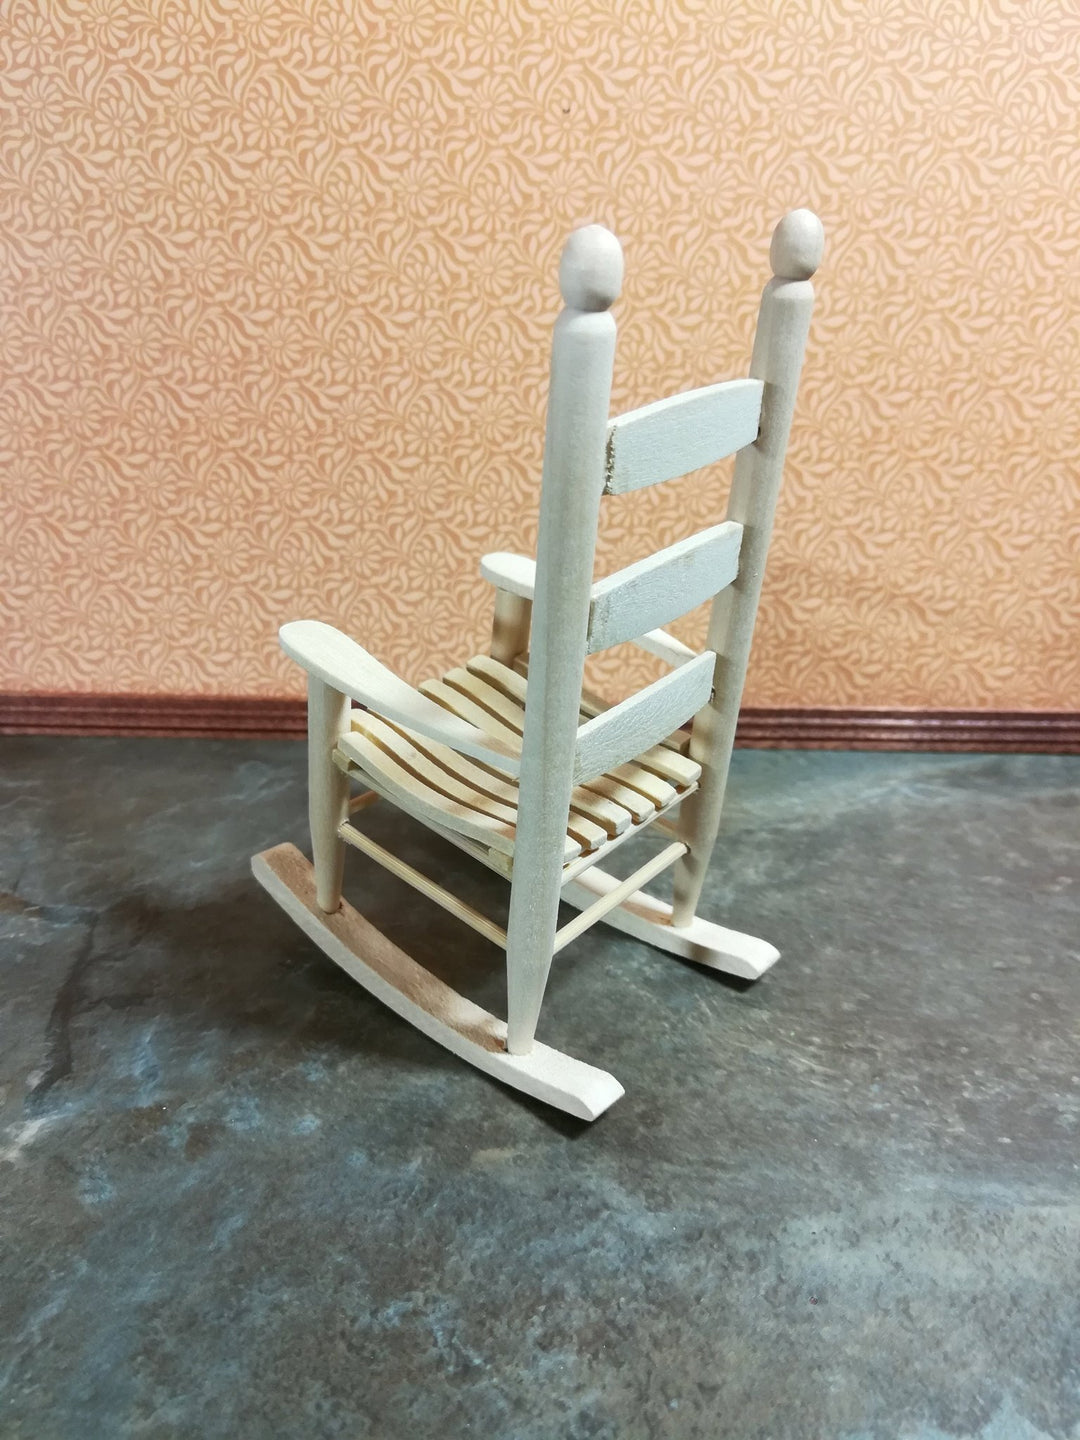 Dollhouse Miniature Rocking Chair Classic Ladderback 1:12 Scale Furniture Unfinished - Miniature Crush